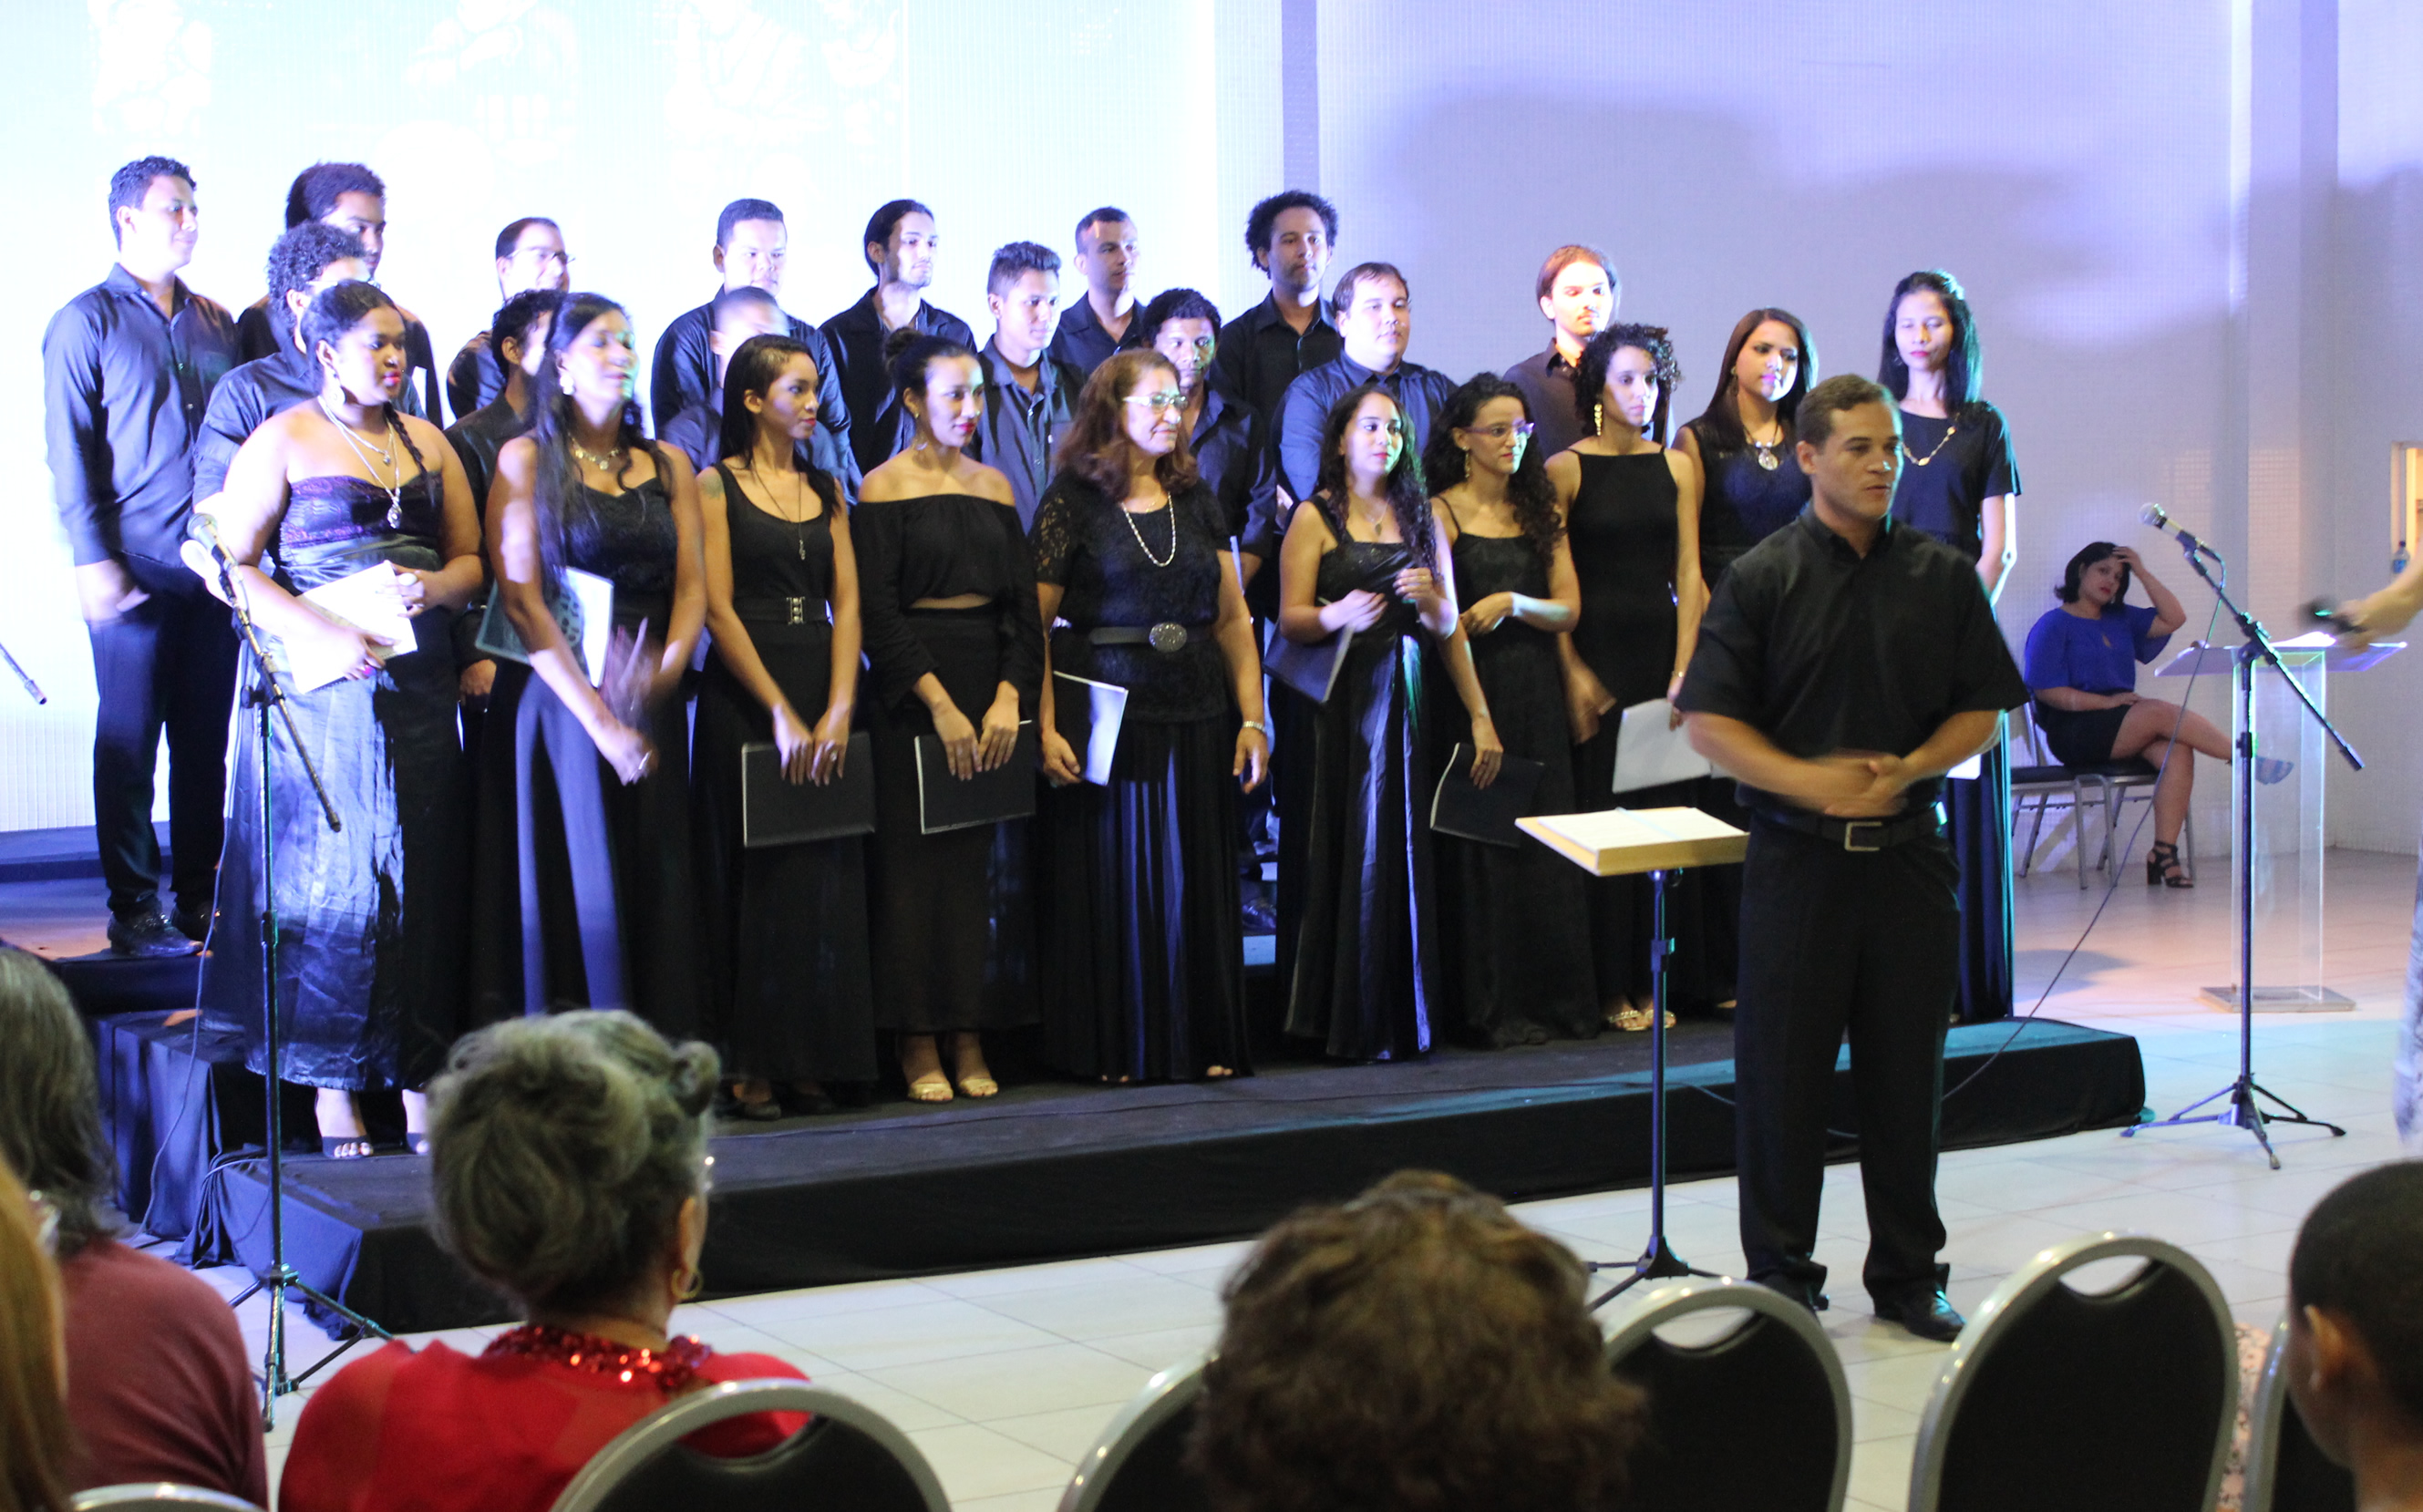 O coral Vozes do Campus apresenta concerto do projeto Sesc Partituras às 19h30.